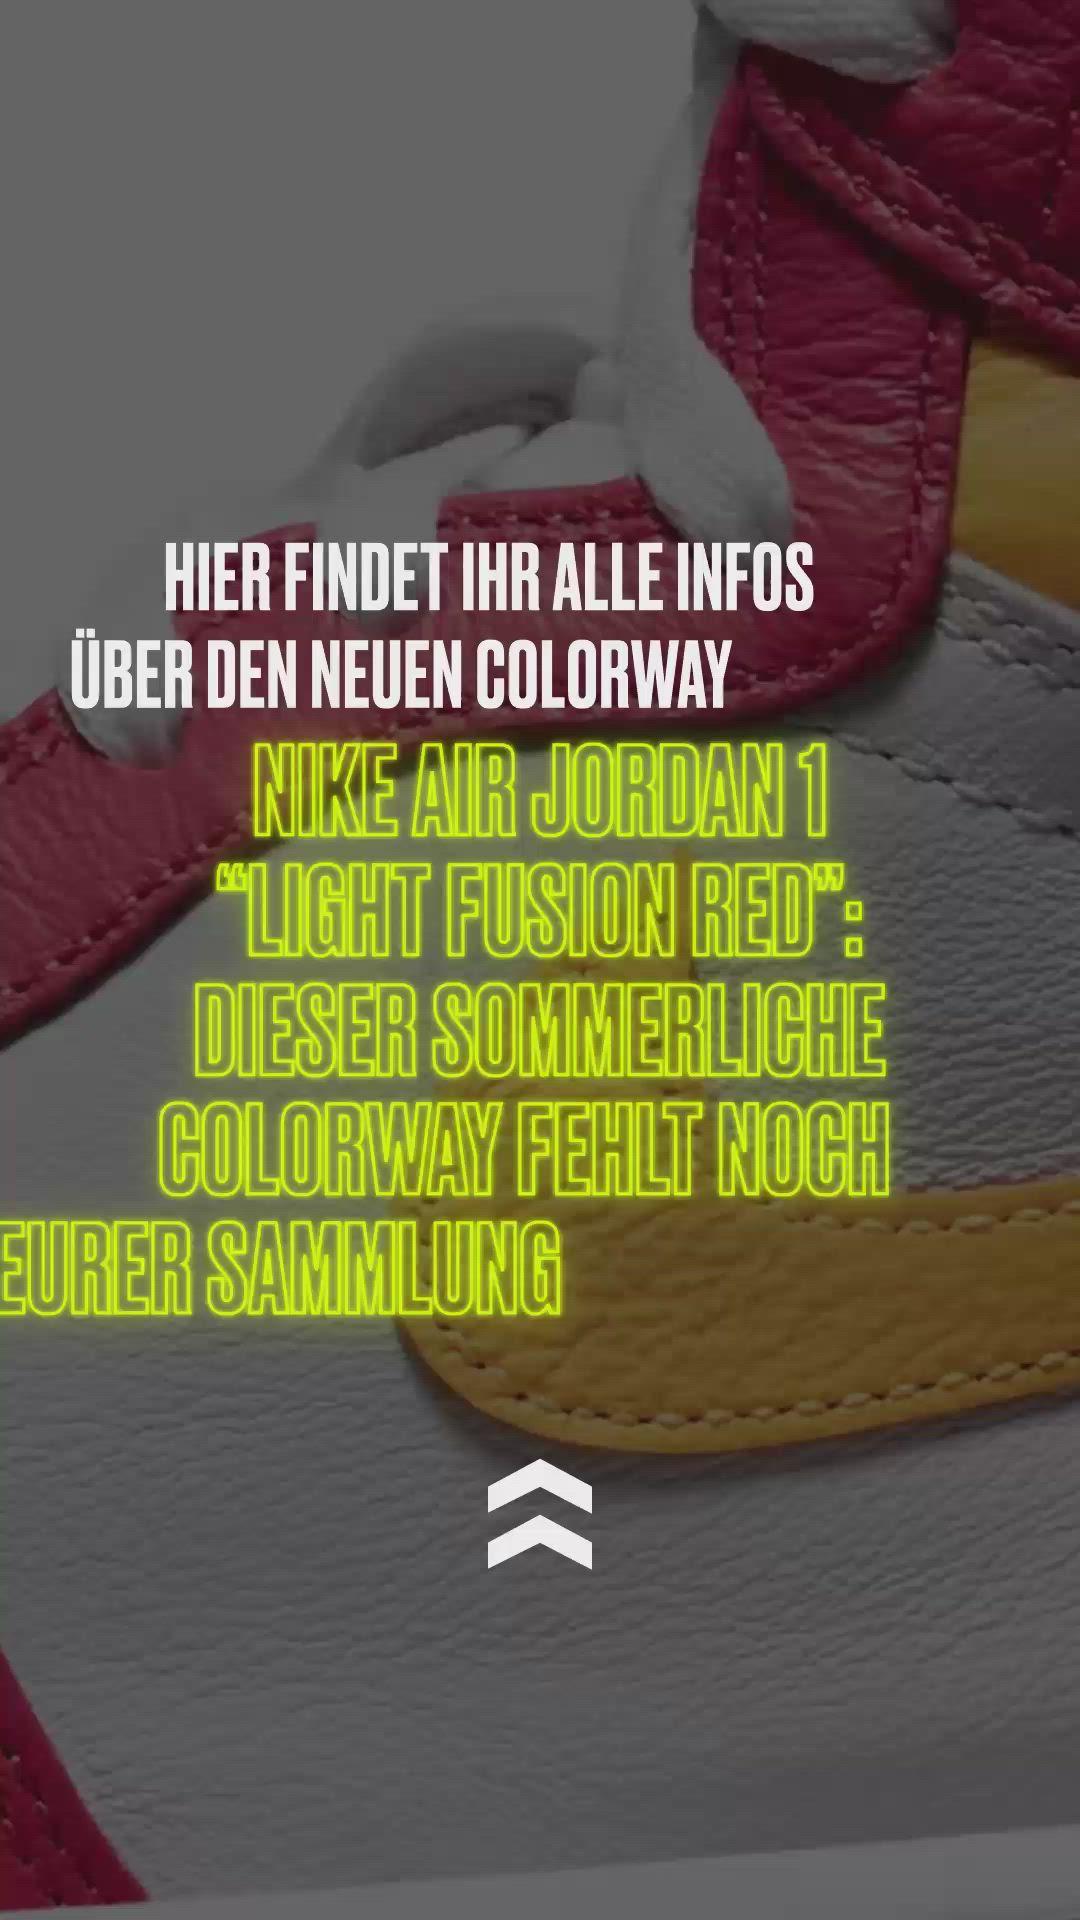 Nike Air Jordan 1 “Light Fusion Red”: Dieser sommerliche Colorway fehlt noch in Ihrer Sammlung 